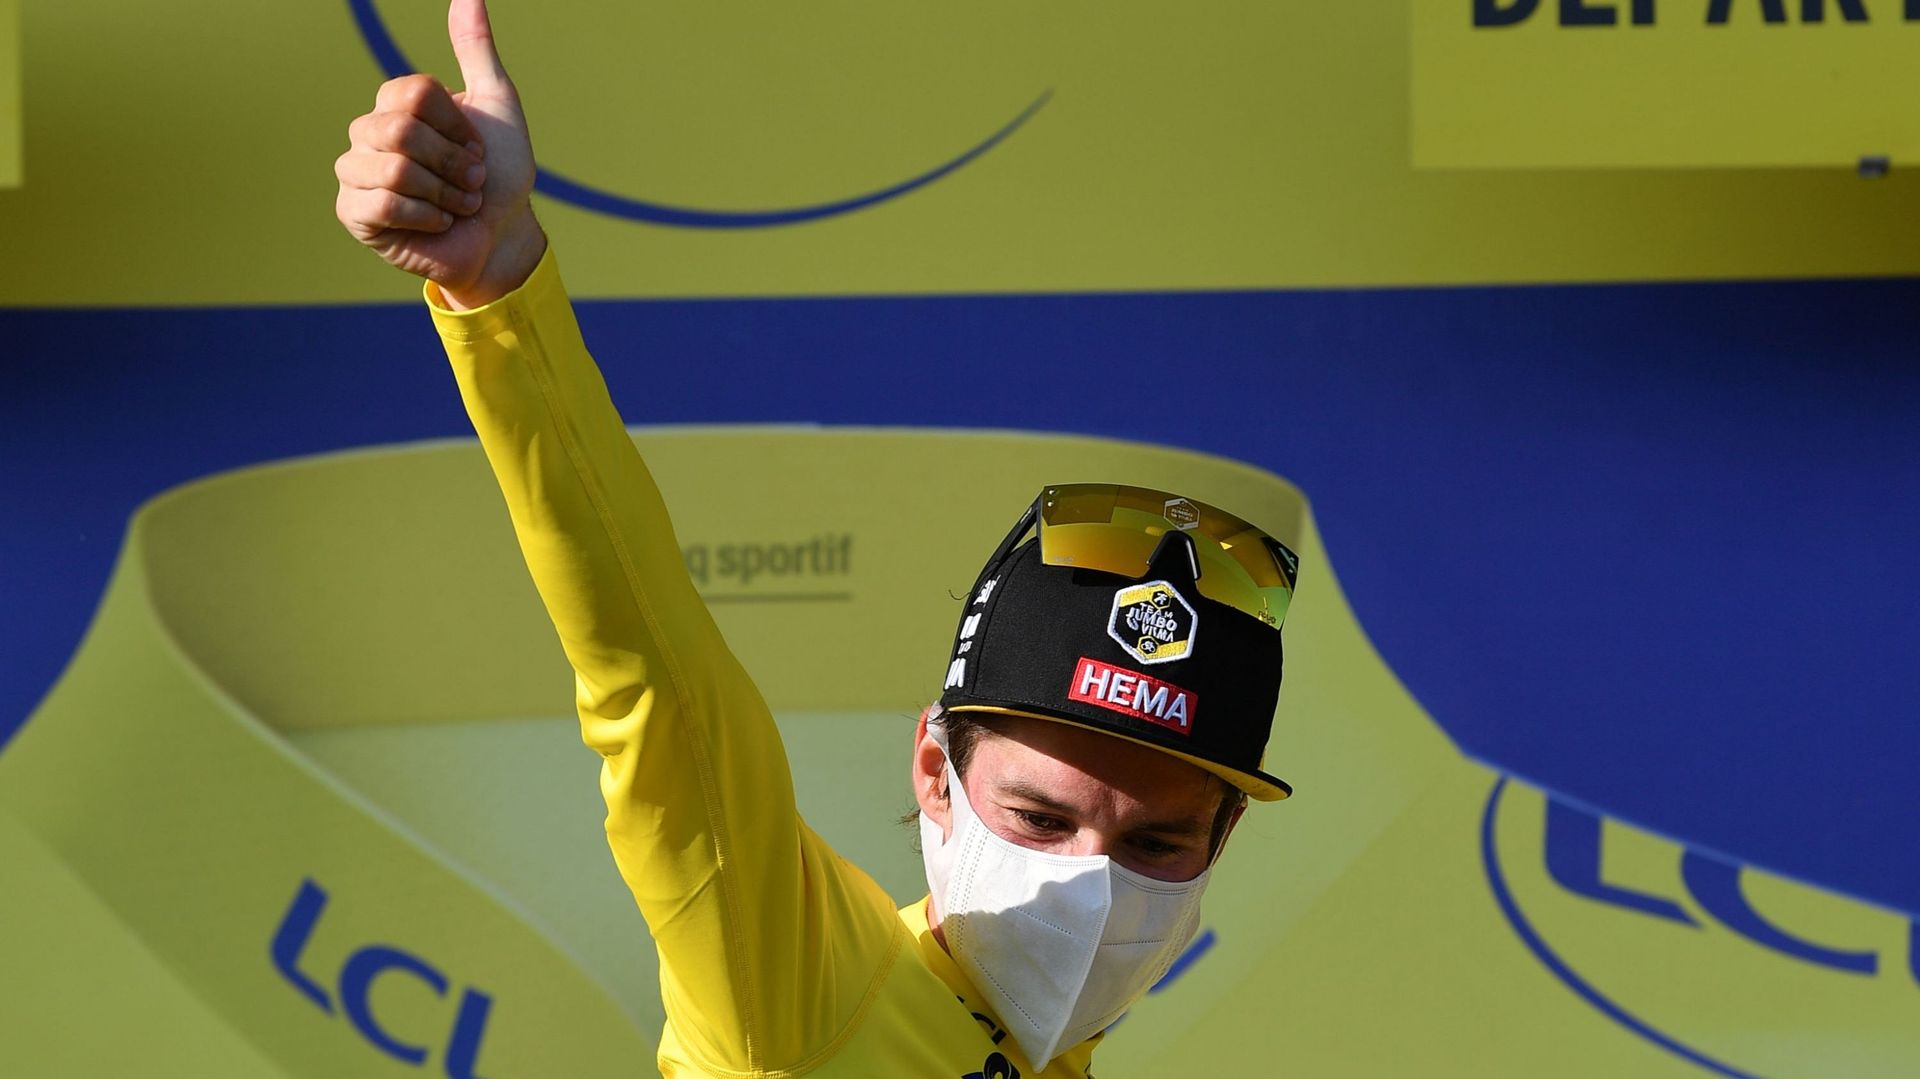 Le Slovène Primoz Roglic (Jumbo-Visma) a conservé son maillot jaune dimanche au terme de la 15e étape du Tour de France